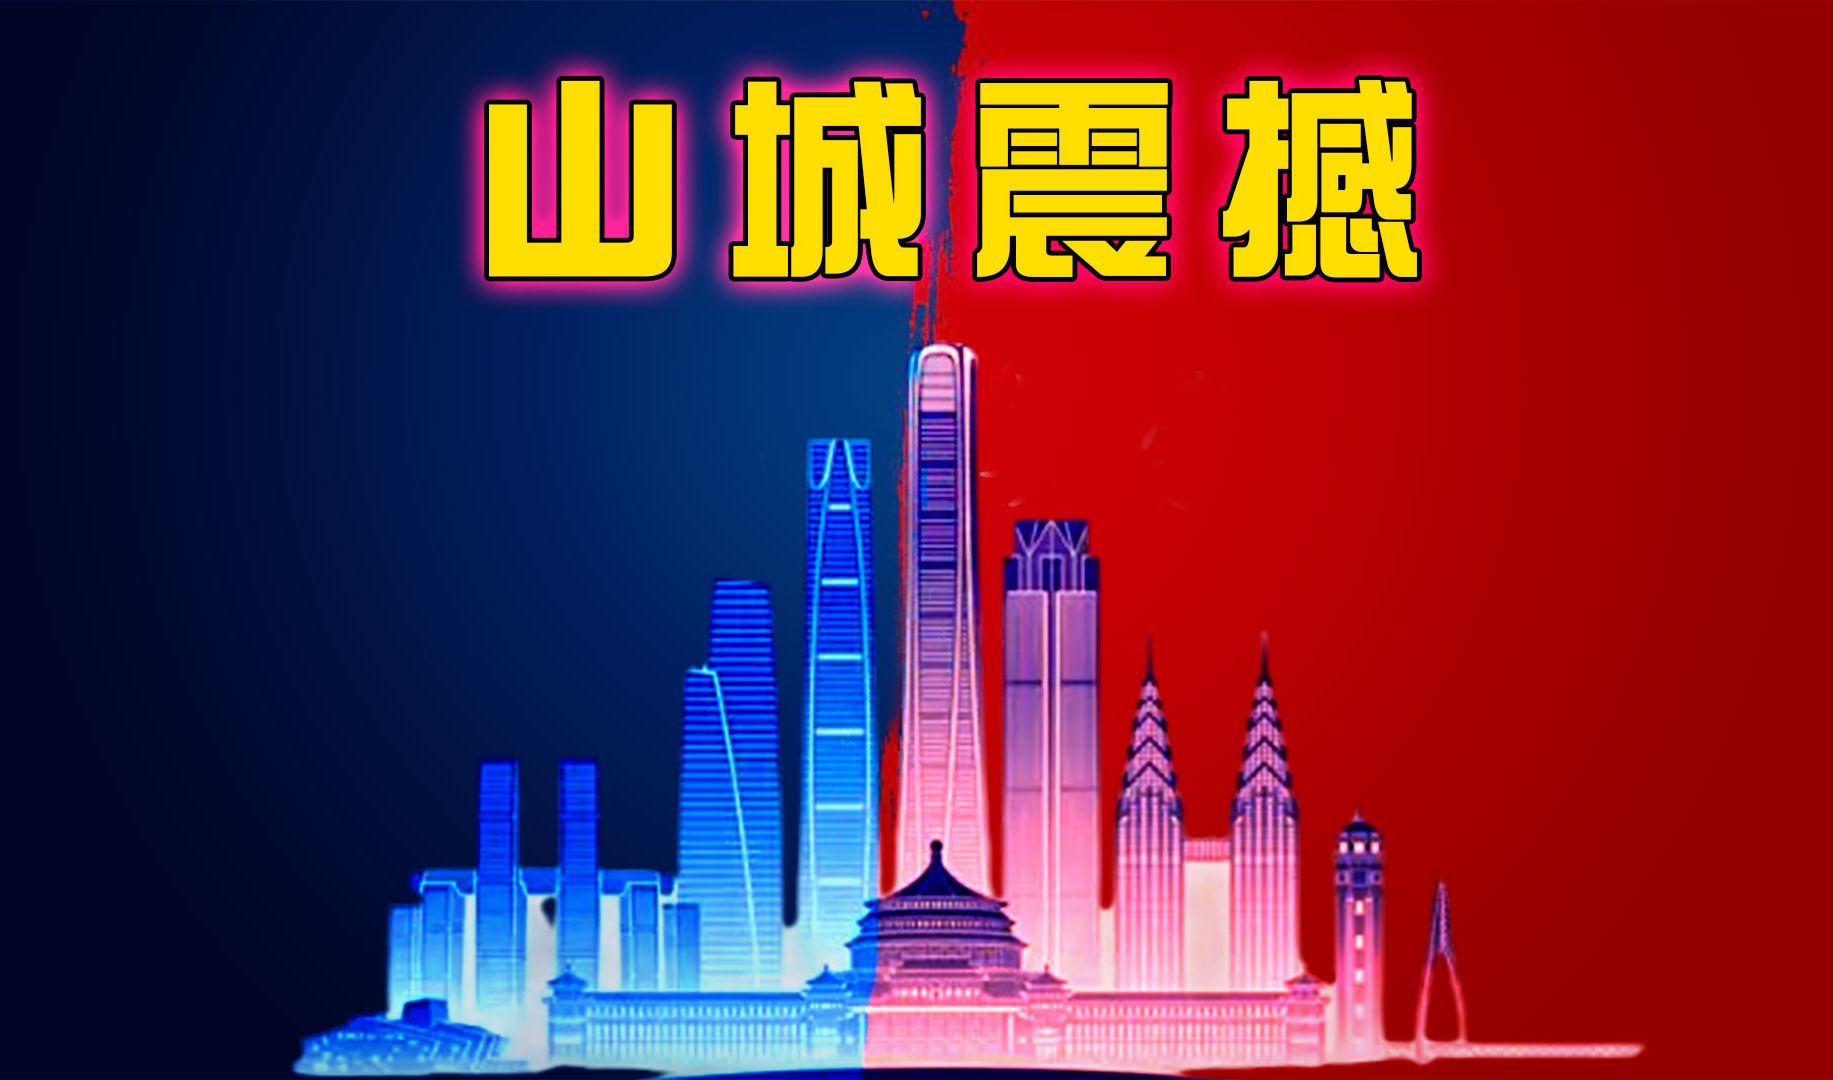 重庆 5G 网络覆盖情况及对生活的影响：高速传输，改变山城生活  第7张